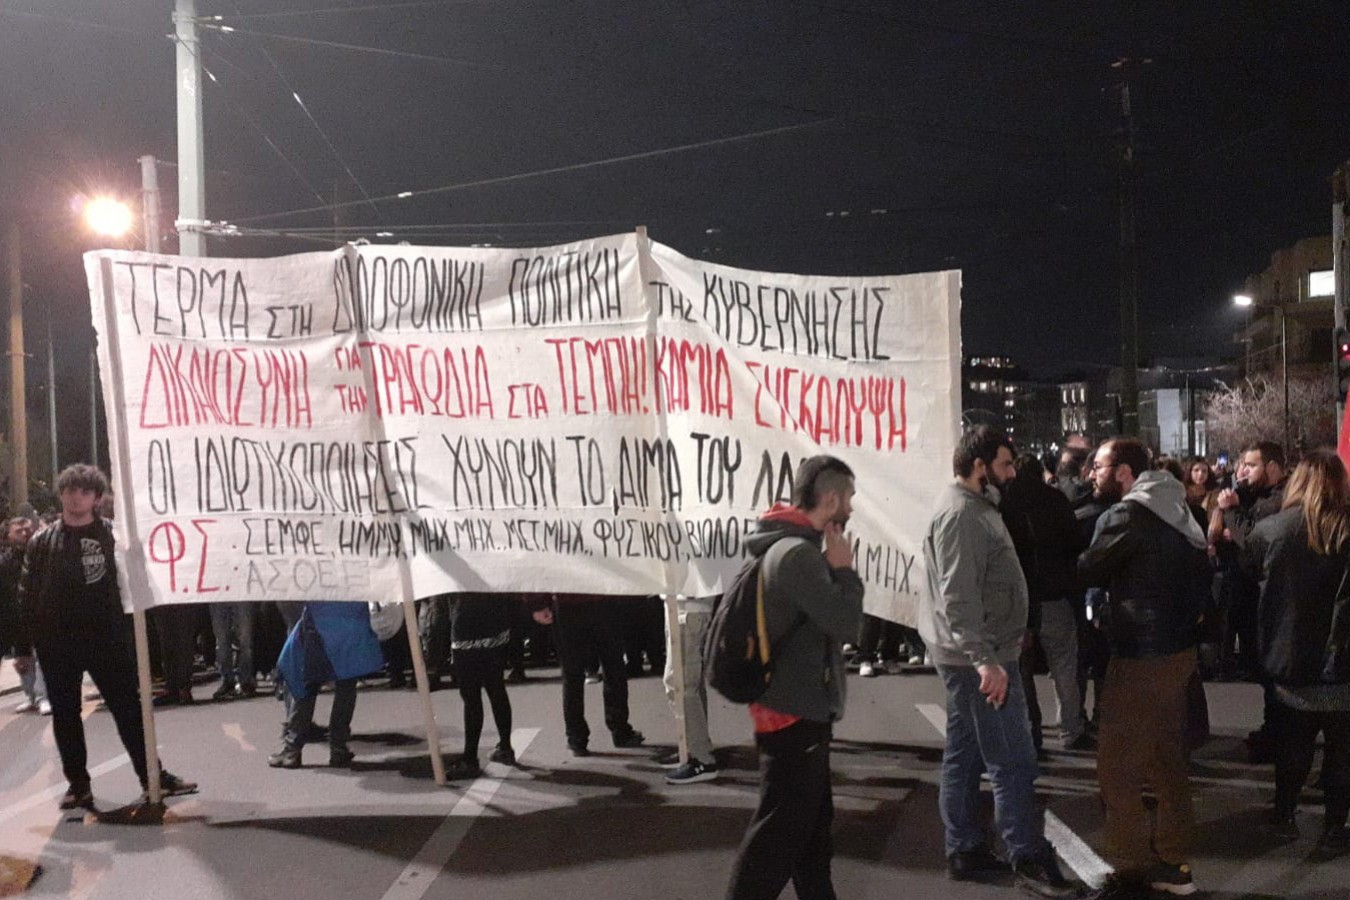 Yunanistan''da yaşanan tren kazası protesto edildi: Özelleştirmeler  öldürüyor! - Evrensel